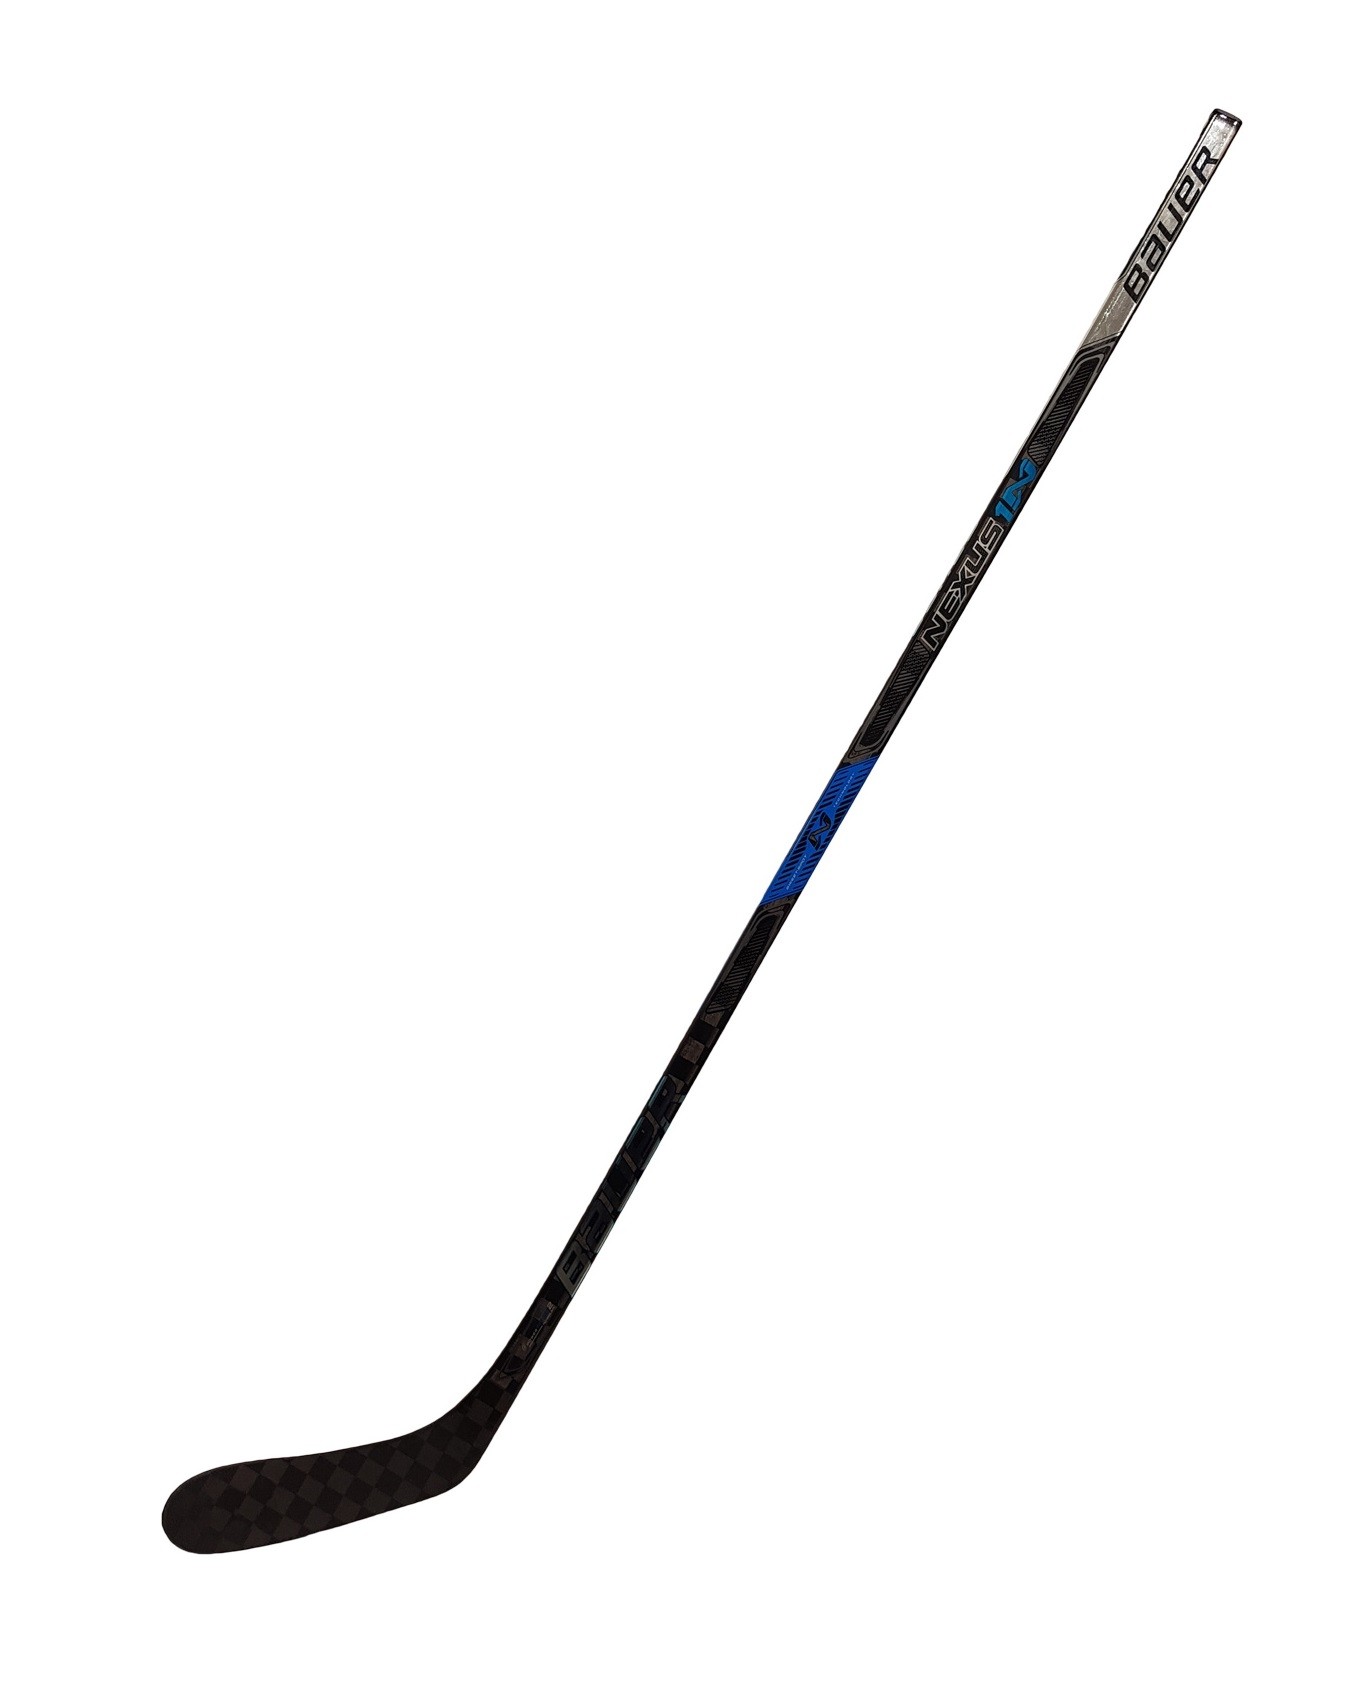 BAUER Nexus 1N S16 Intermediate Hockeykølle